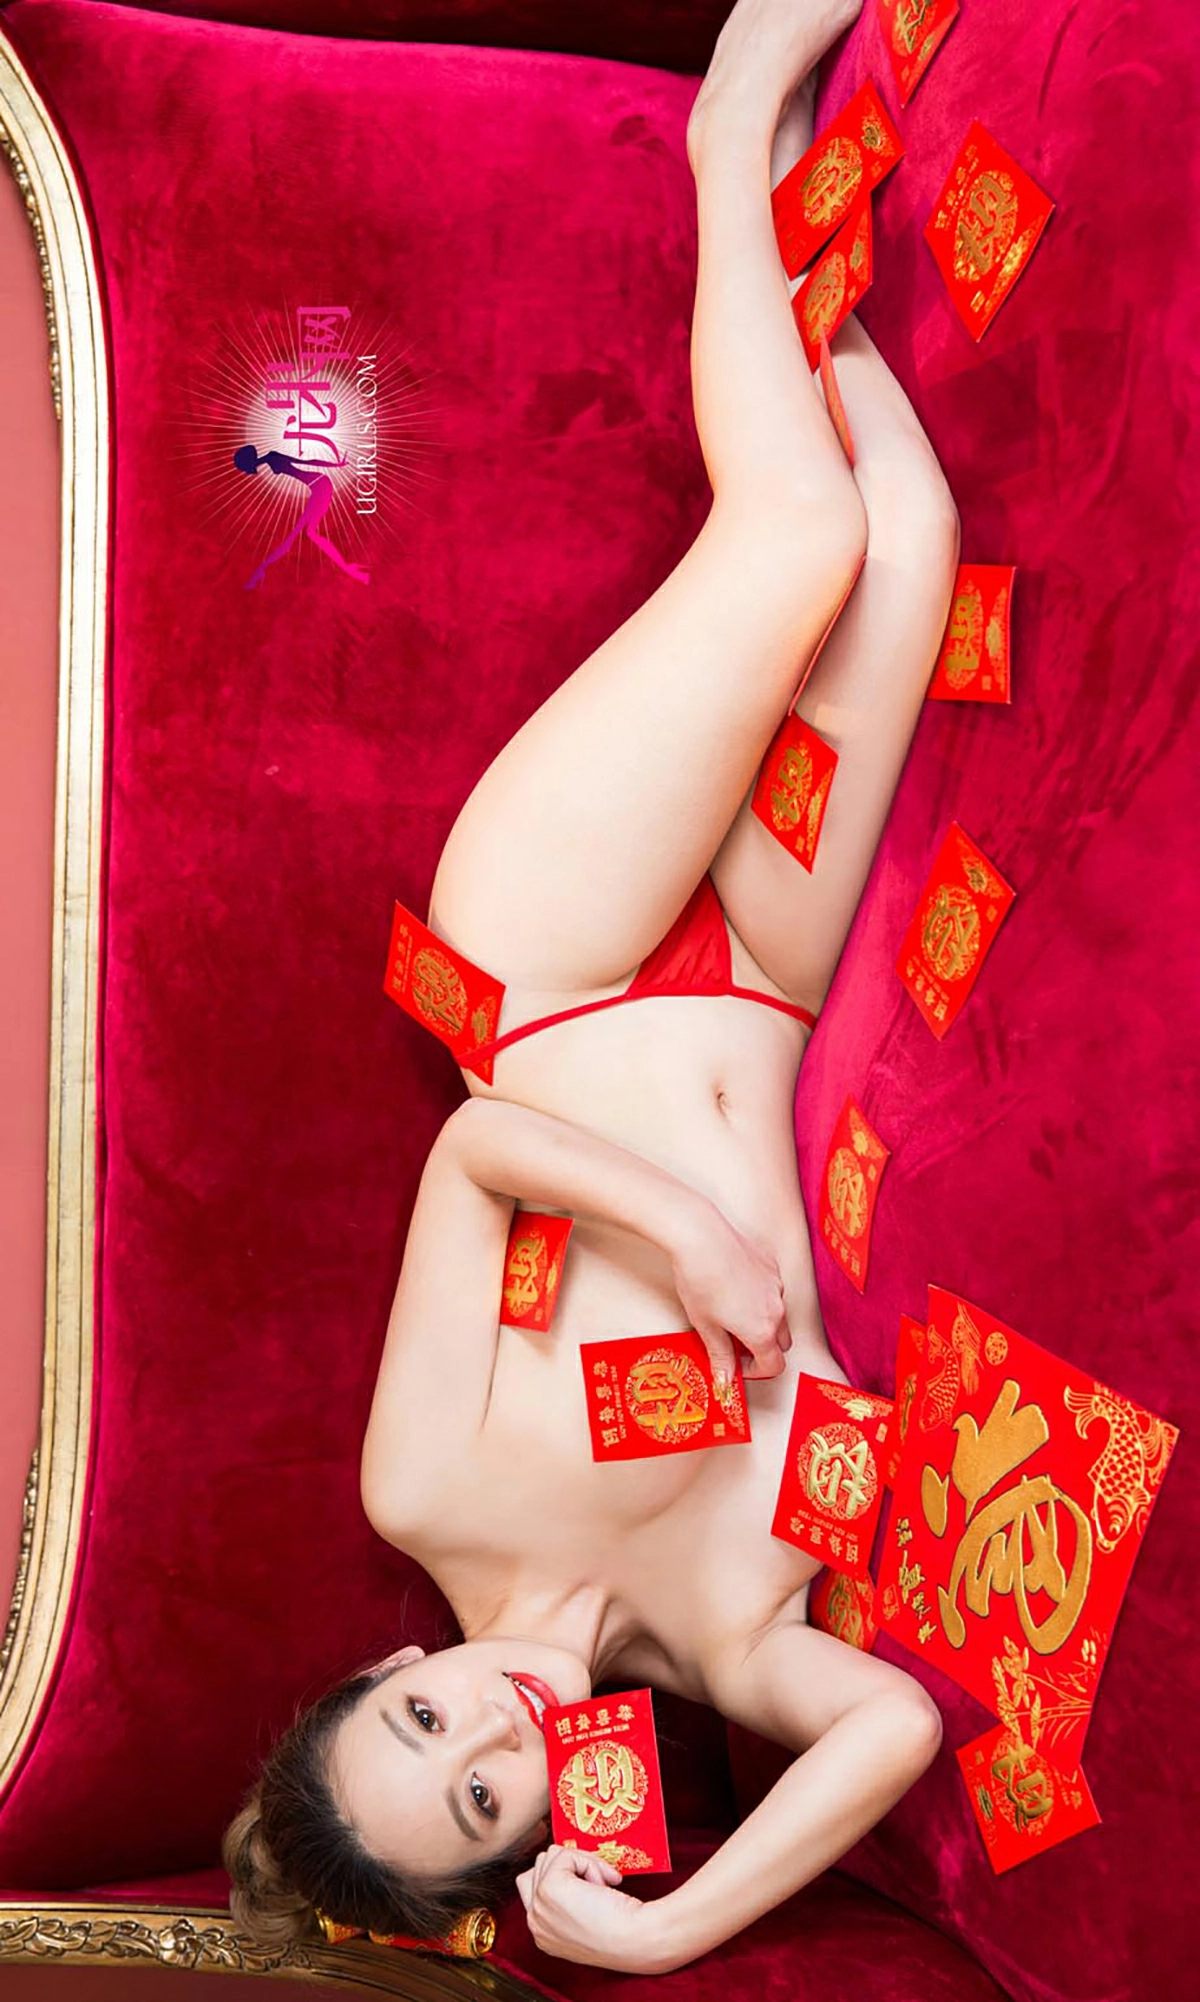 [爱尤物]NO.265 美人闹新年 何曼丽&张鑫 红色睡衣与情趣肚兜性感私房写真集,4714